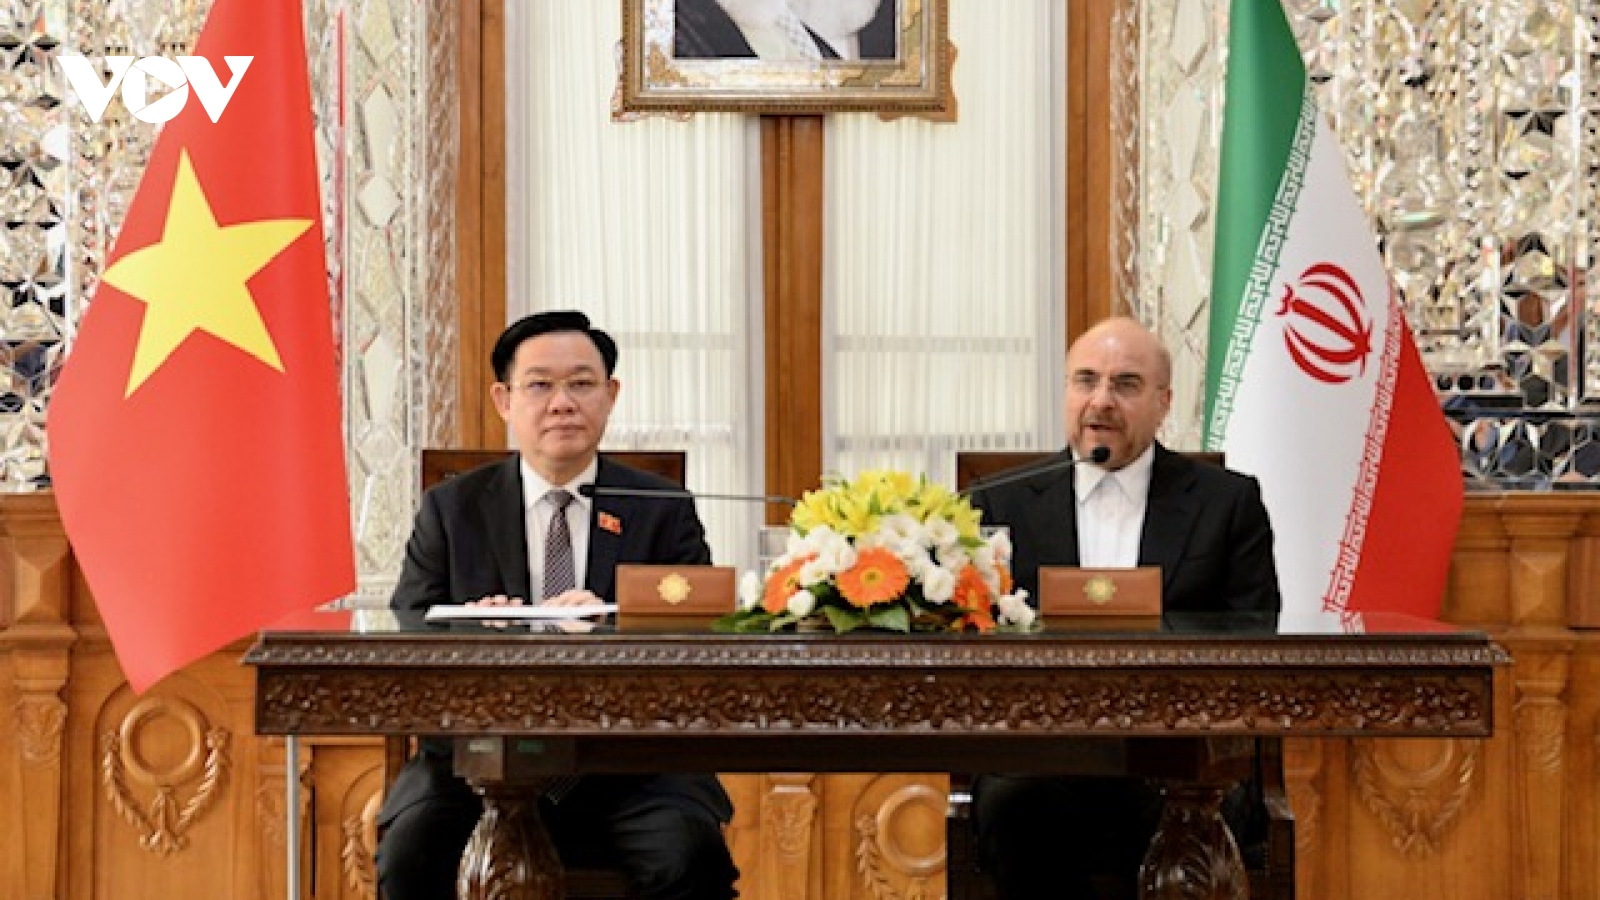 Chủ tịch Quốc hội Việt Nam và Chủ tịch Quốc hội Iran gặp gỡ báo chí